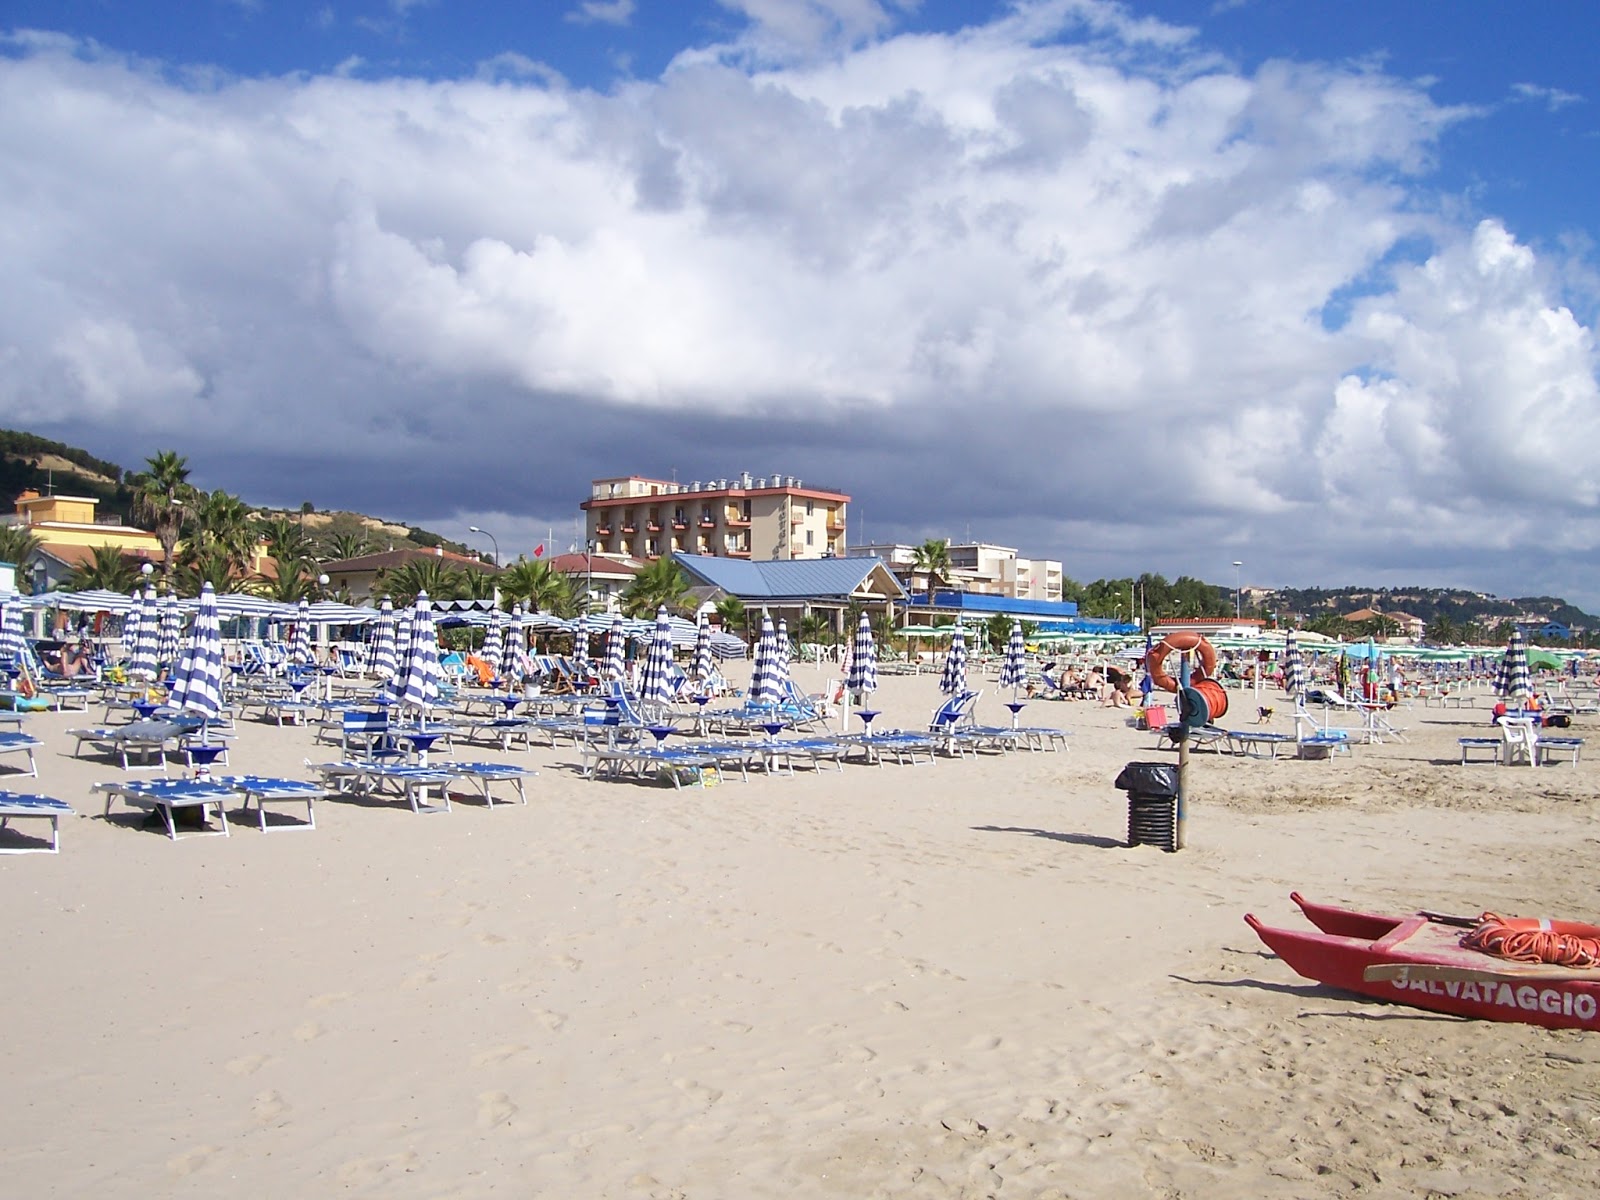 Foto af Colibri' Beach - populært sted blandt afslapningskendere